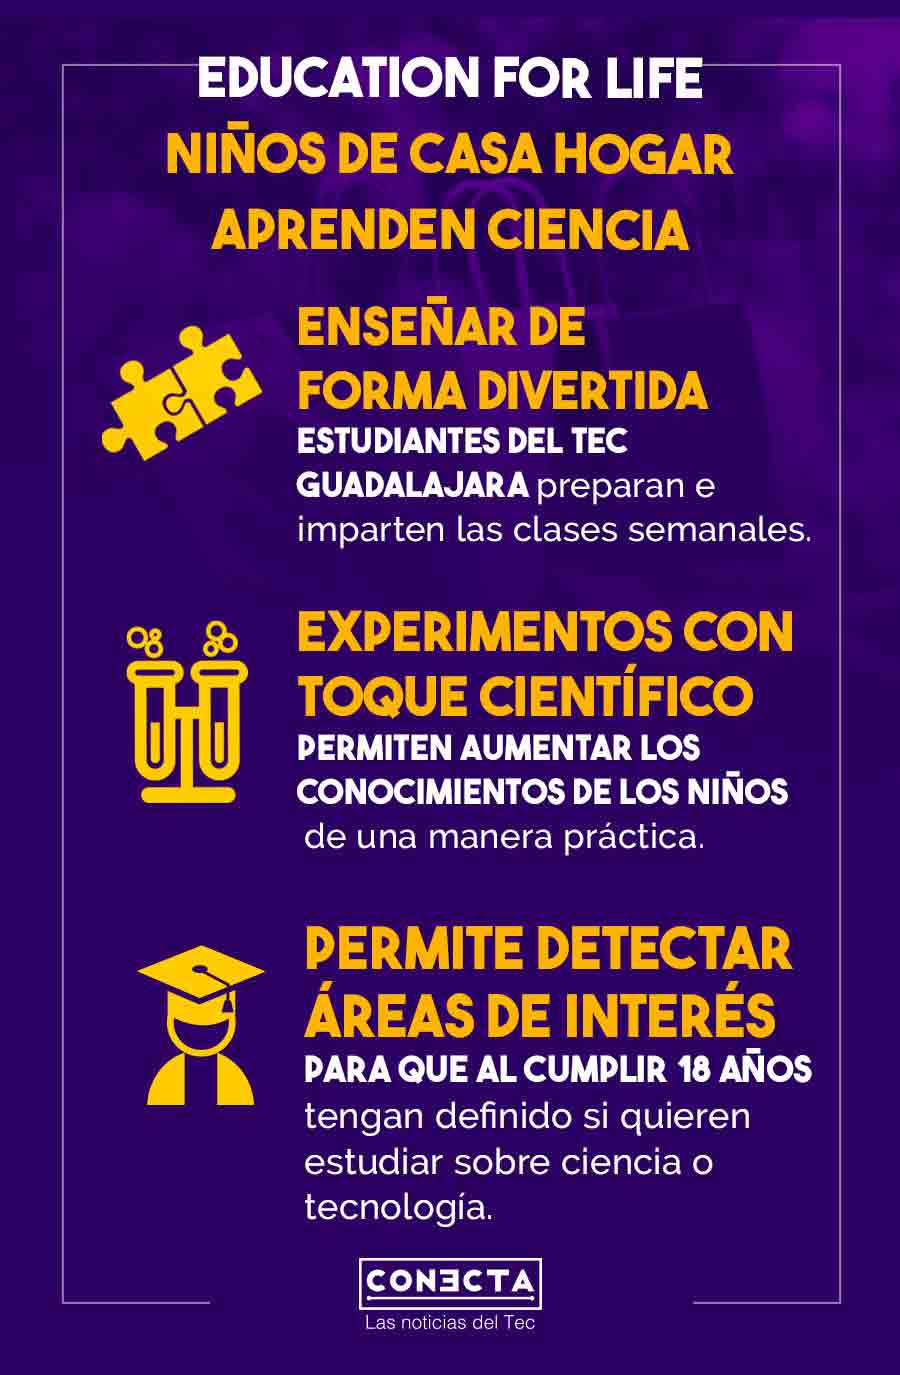 Education for life iniciativa de profesor y estudiantes del Tec Guadalajara para enseñar ciencia a niños de casa hogar.